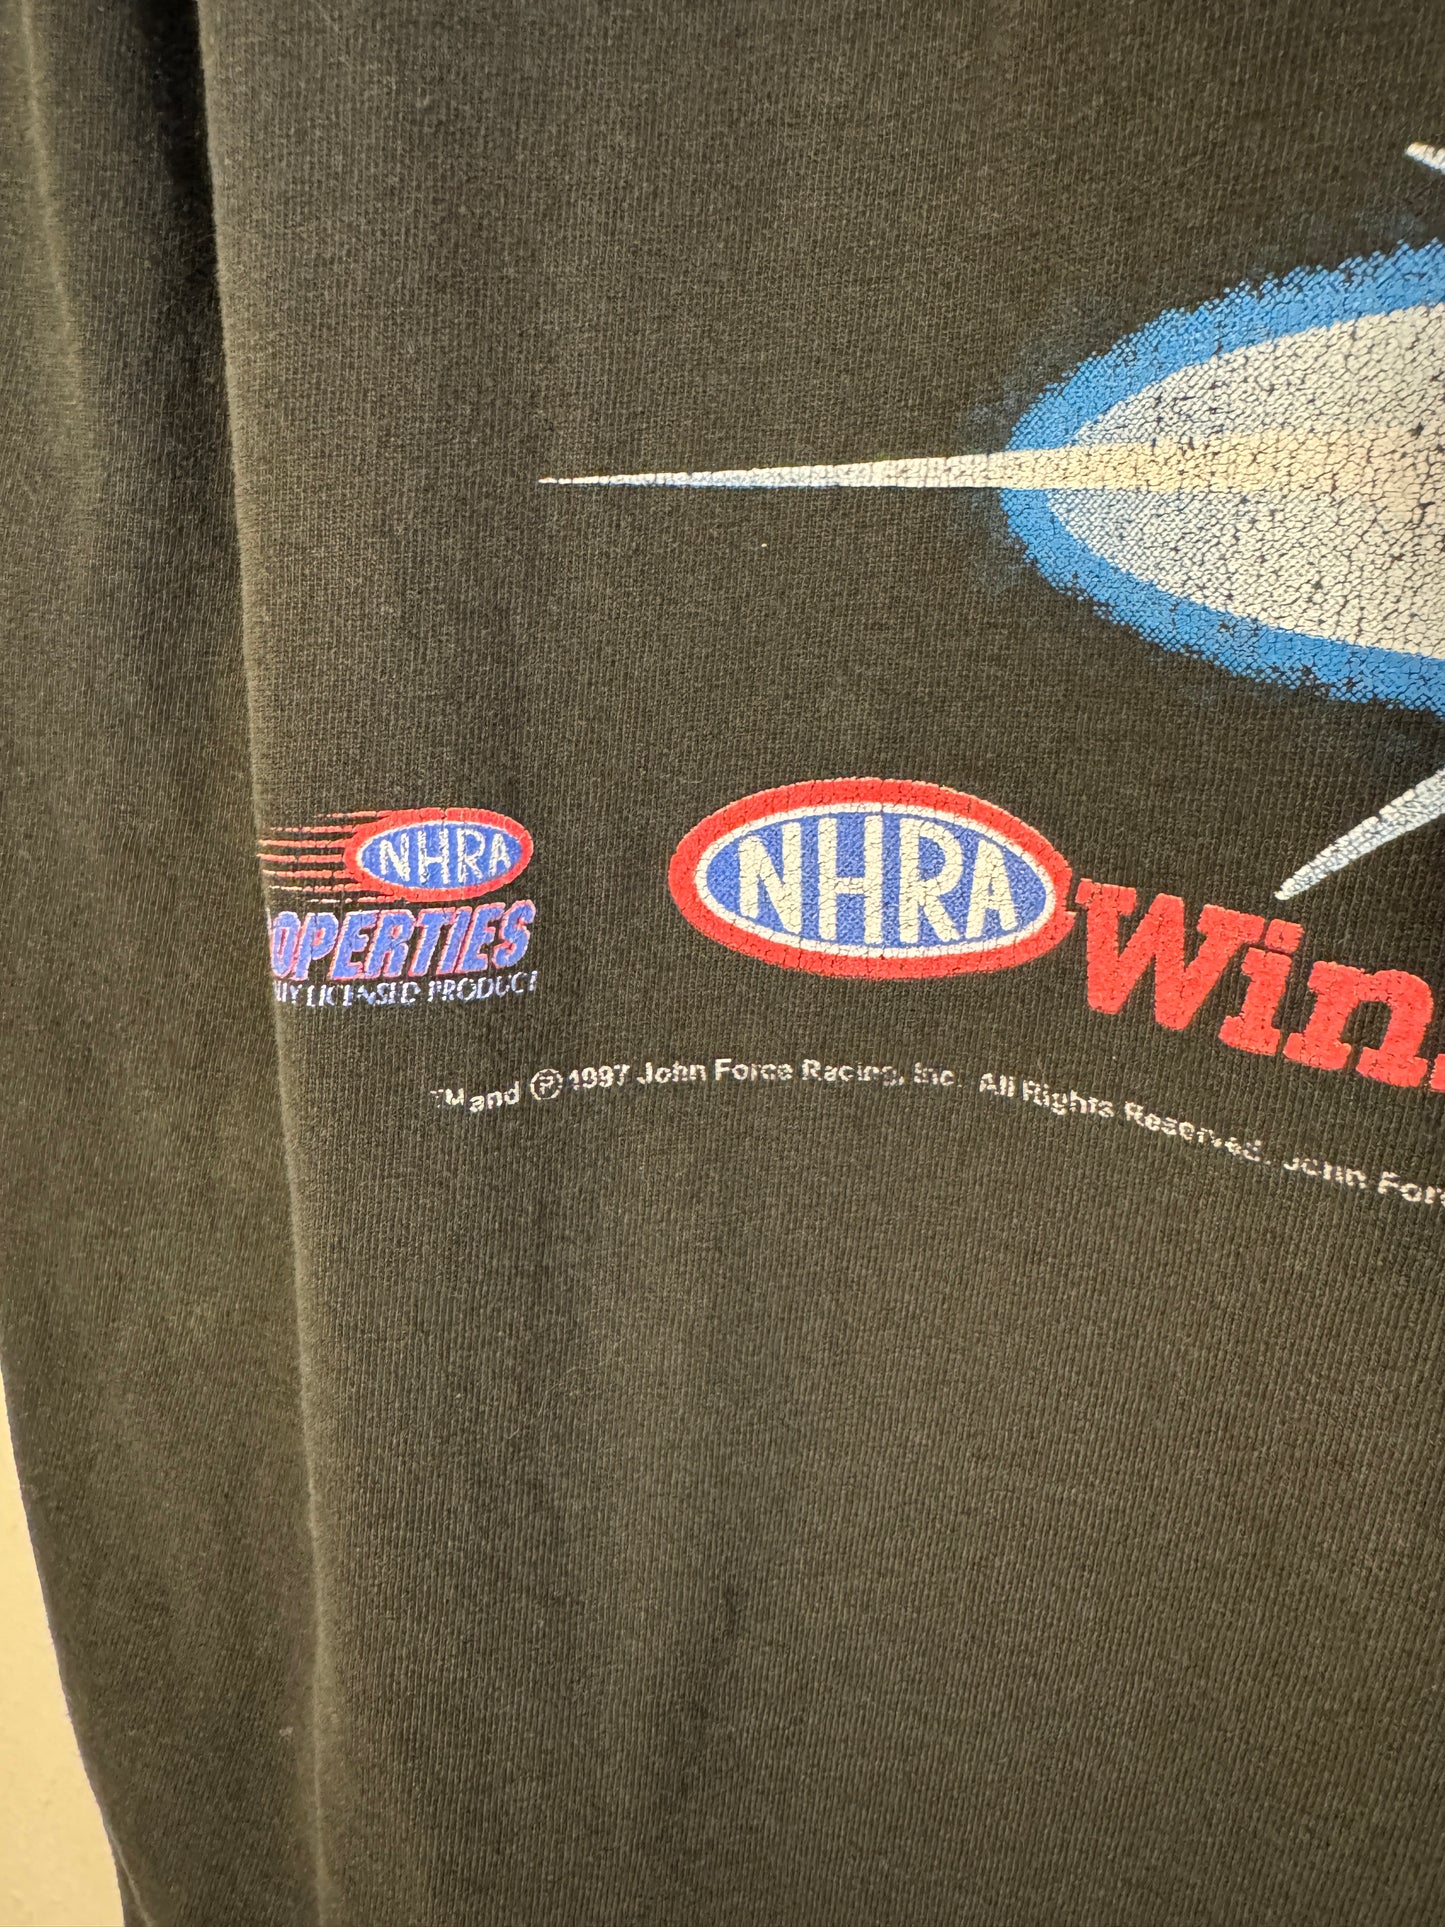 Vintage John Force Shirt NHRA All Over Print Winston Drag Racing